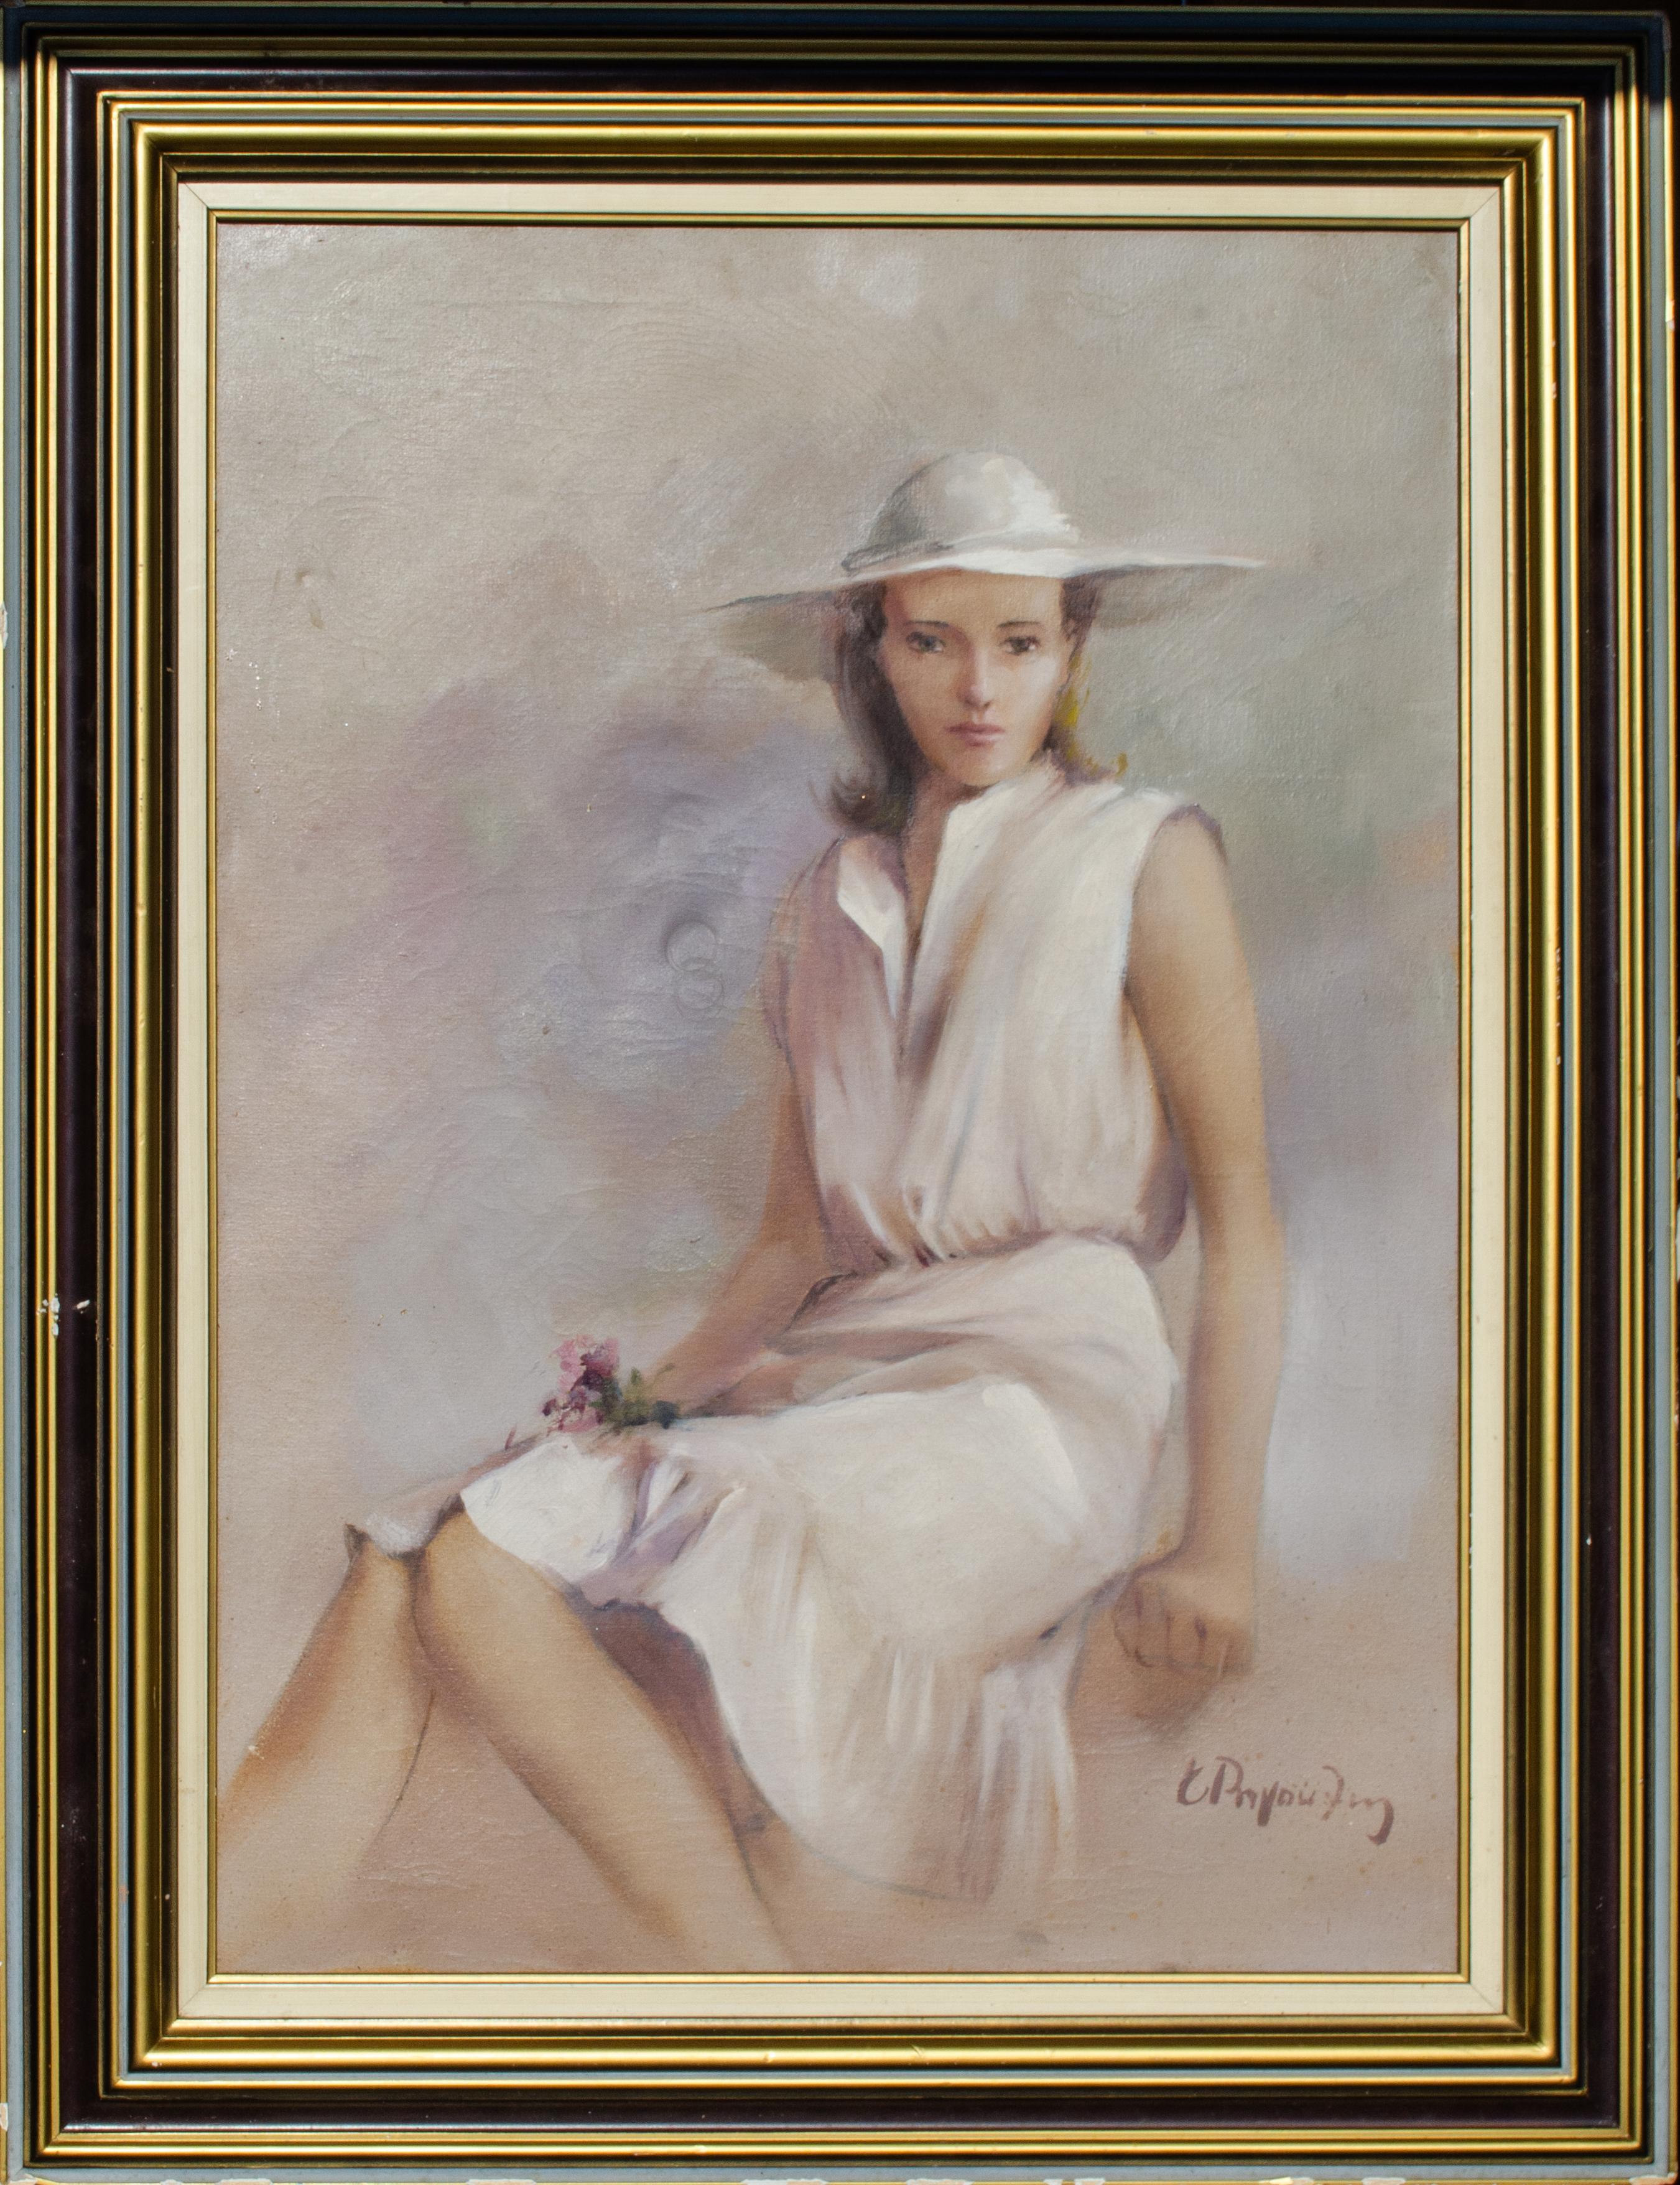 Unknown Portrait Painting – Charmantes impressionistisches Porträt einer jungen Frau